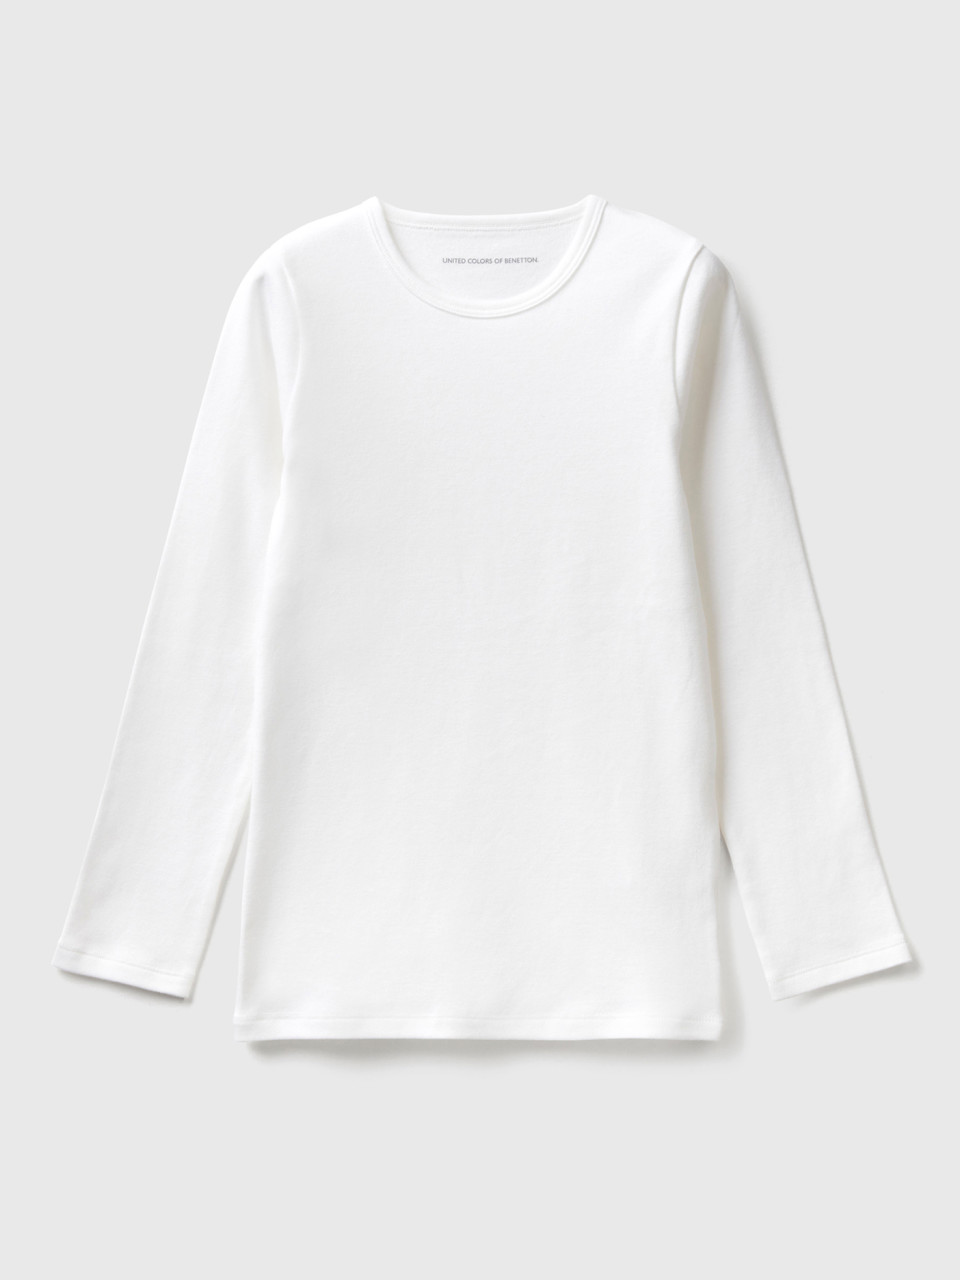 Benetton, T-shirt Manches Longues En Coton Chaud, Blanc, Enfants